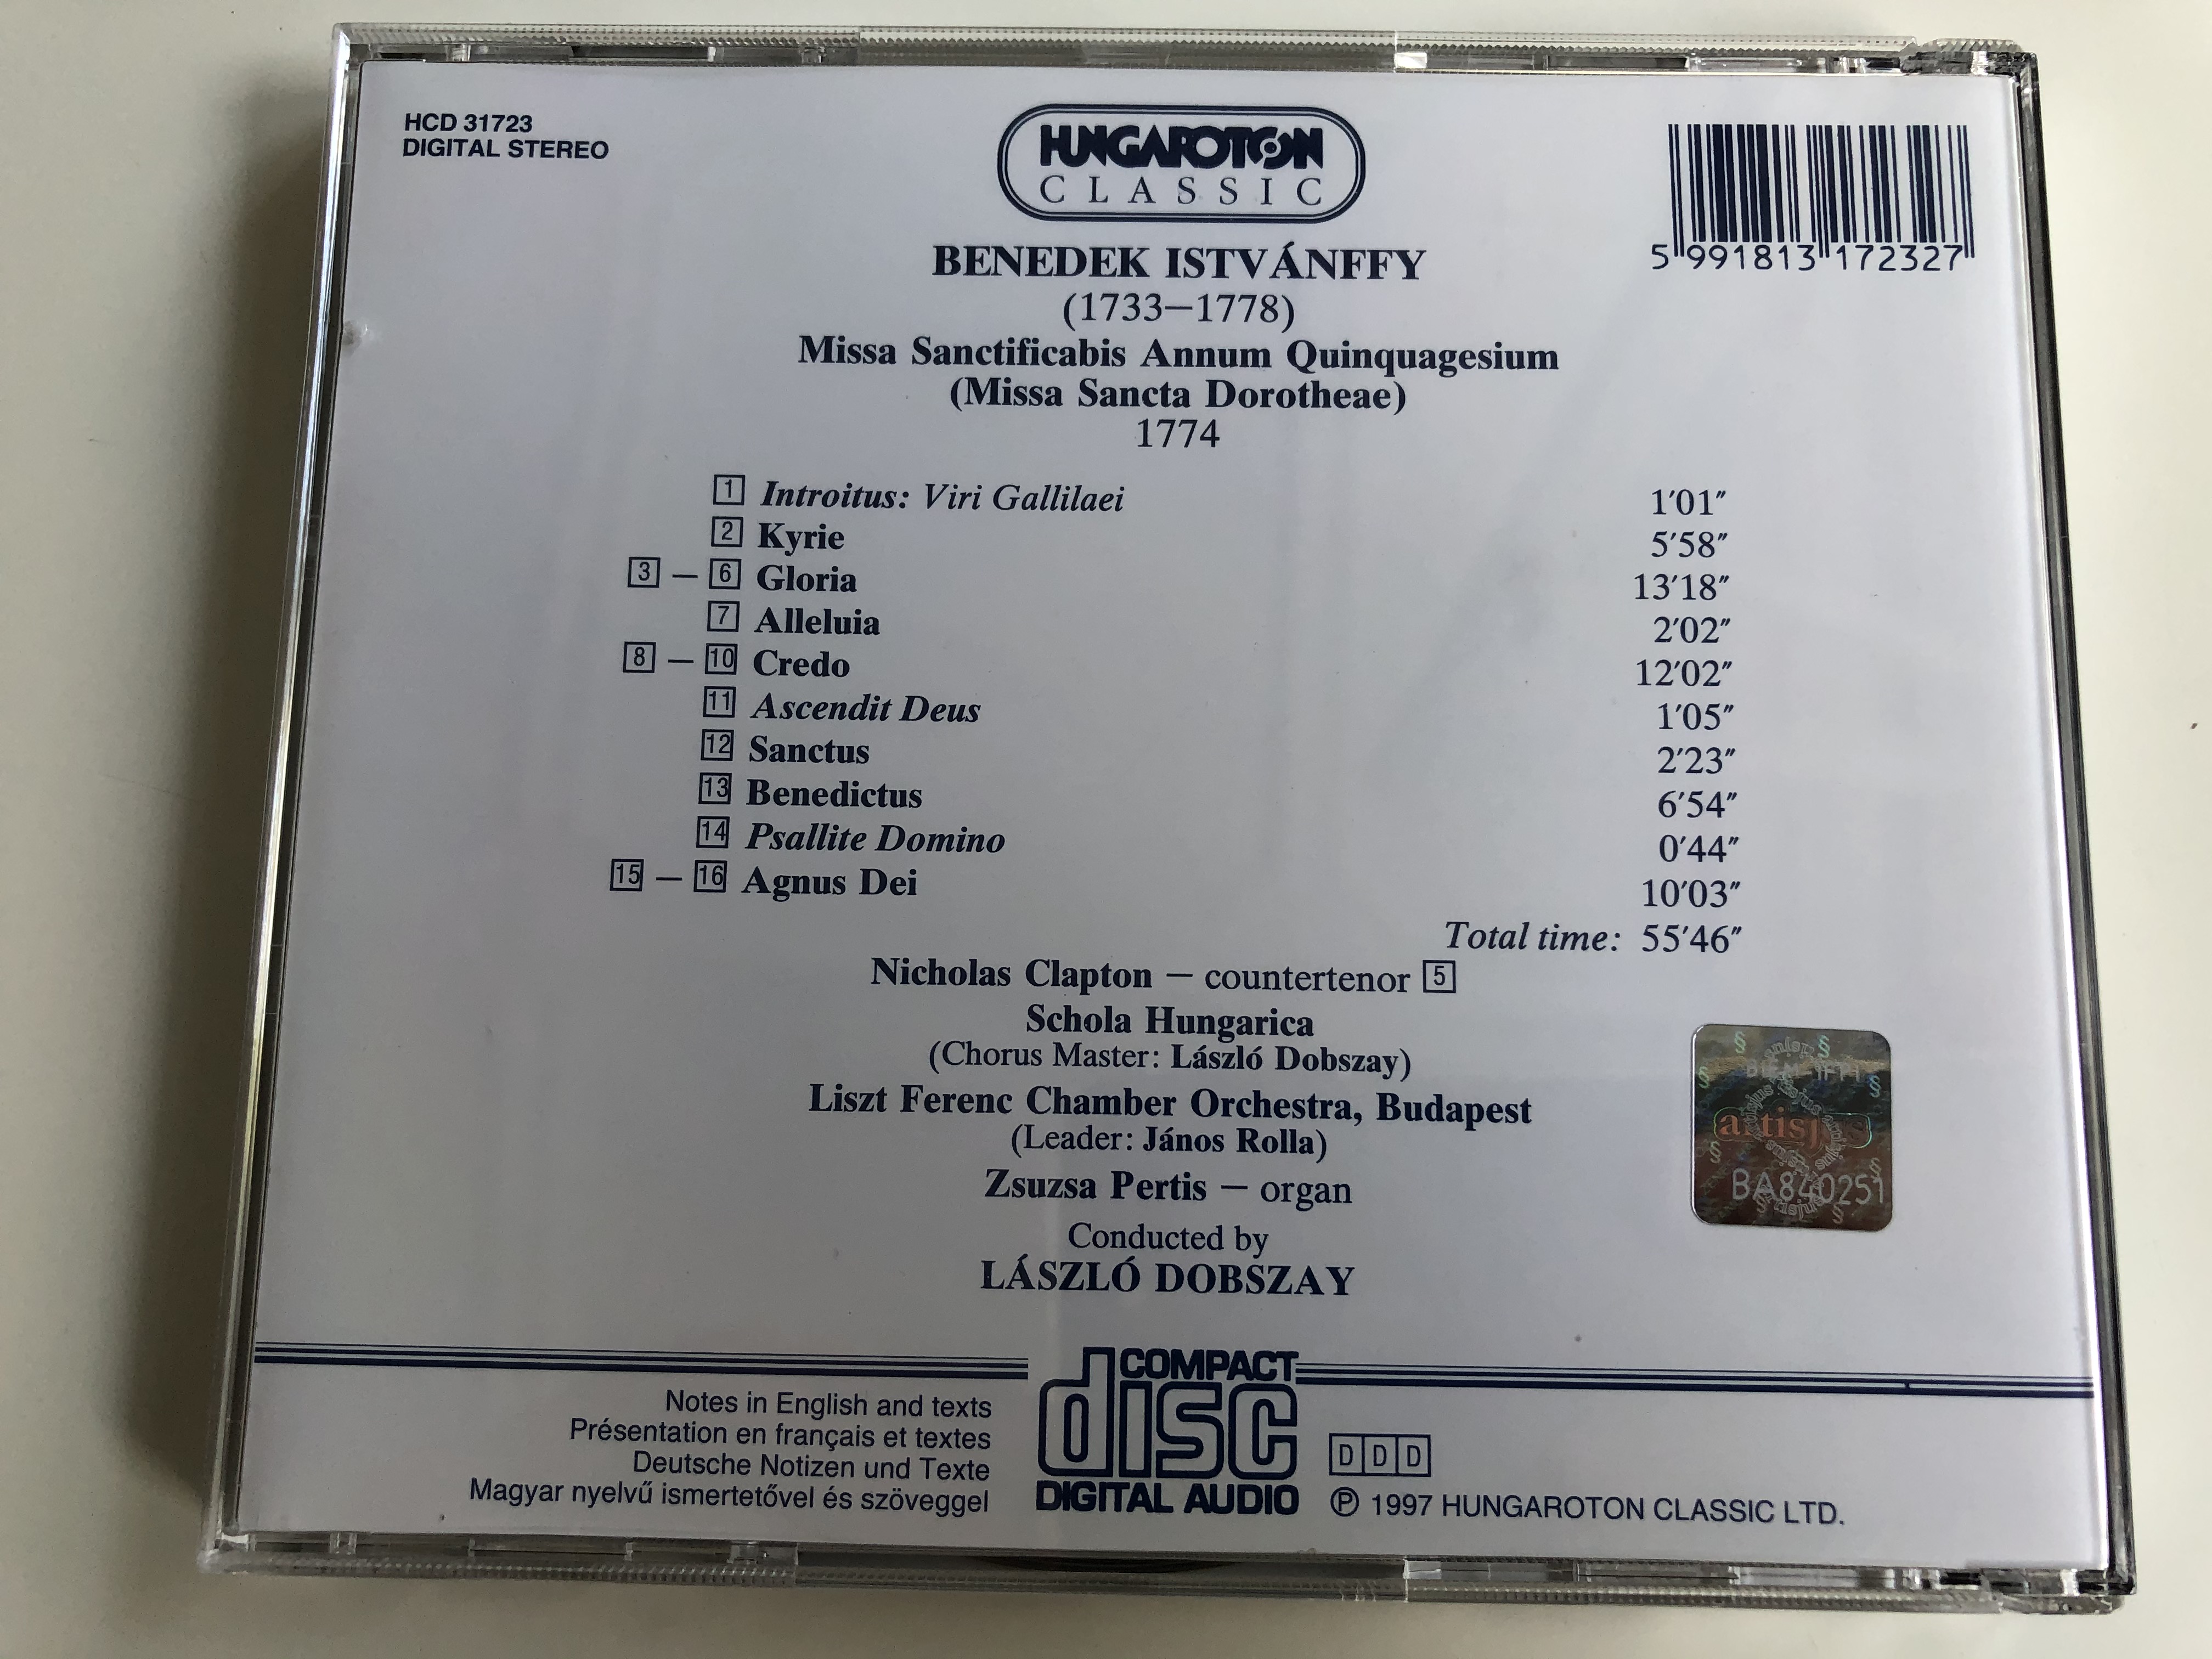 benedek-istvanffy-missa-sanctificabis-annum-quinquagesium-missa-sancta-dorotheae-schola-hungarica-liszt-ferenc-chamber-orchestra-budapest-laszlo-dobszay-hungaroton-classic-audio-cd-1997-8-.jpg